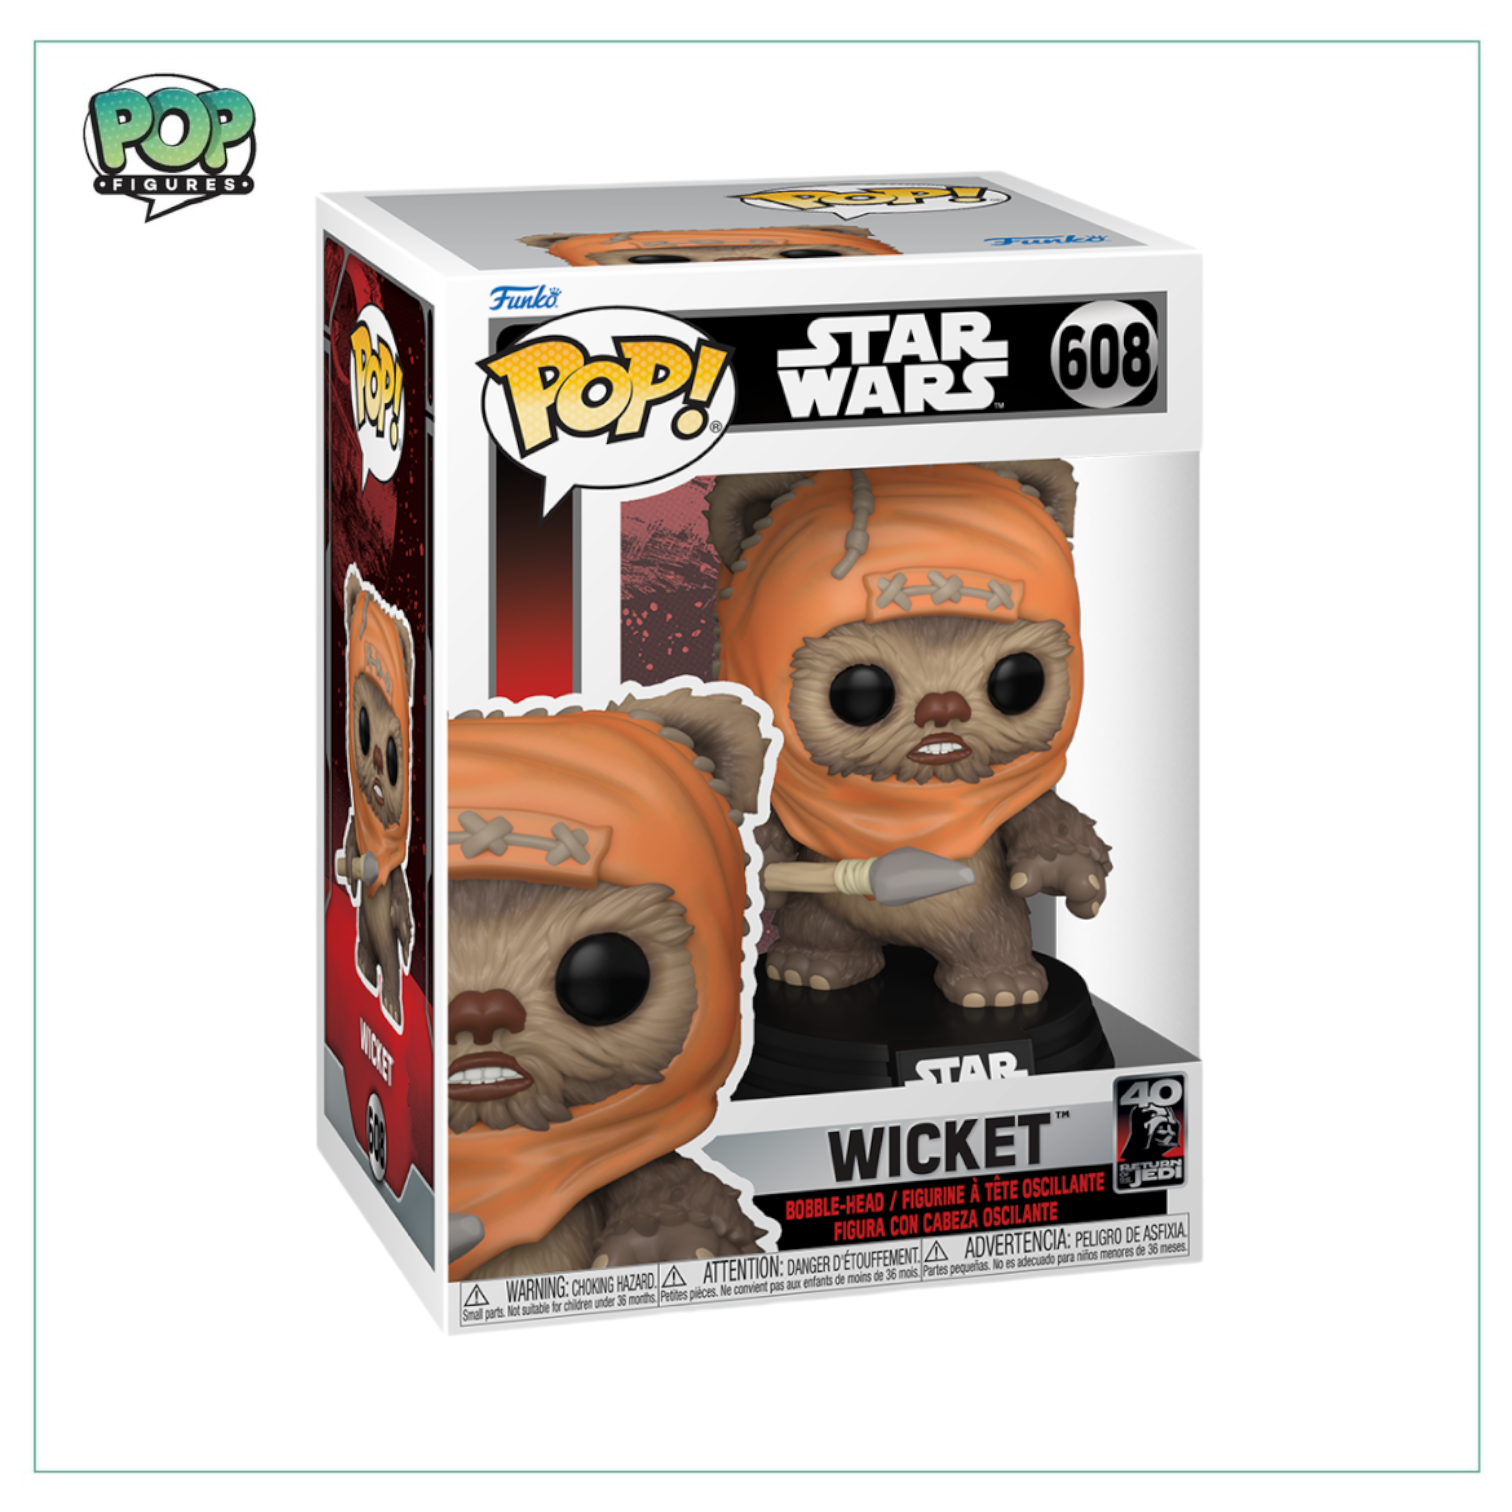 Wicket #608 Funko Pop! Star Wars - Return of the Jedi 40th